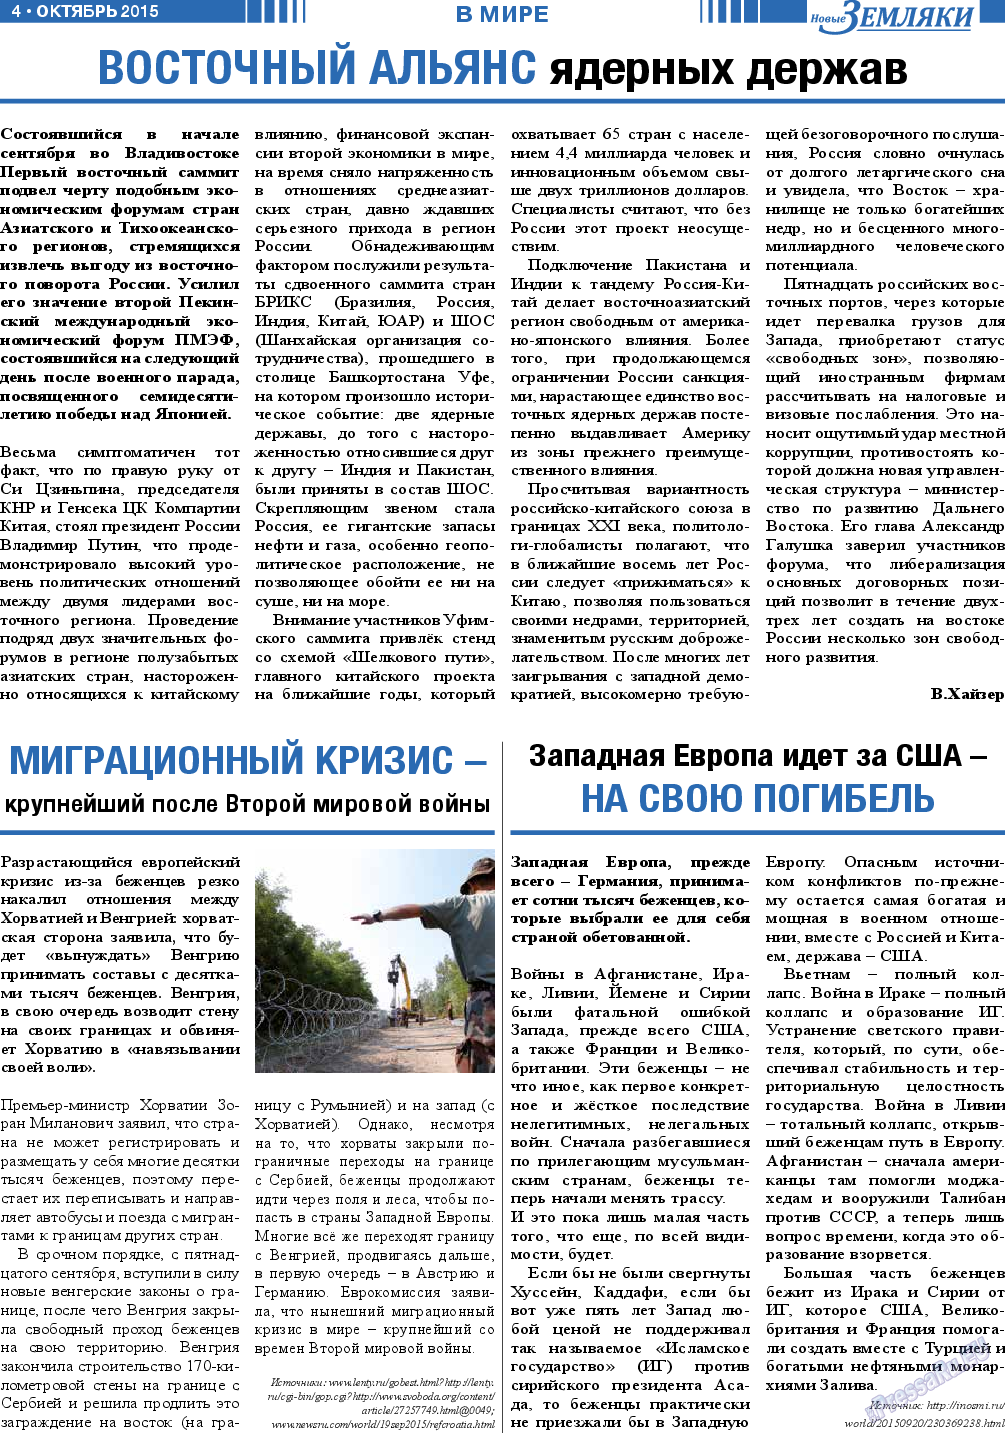 Новые Земляки (газета). 2015 год, номер 10, стр. 4